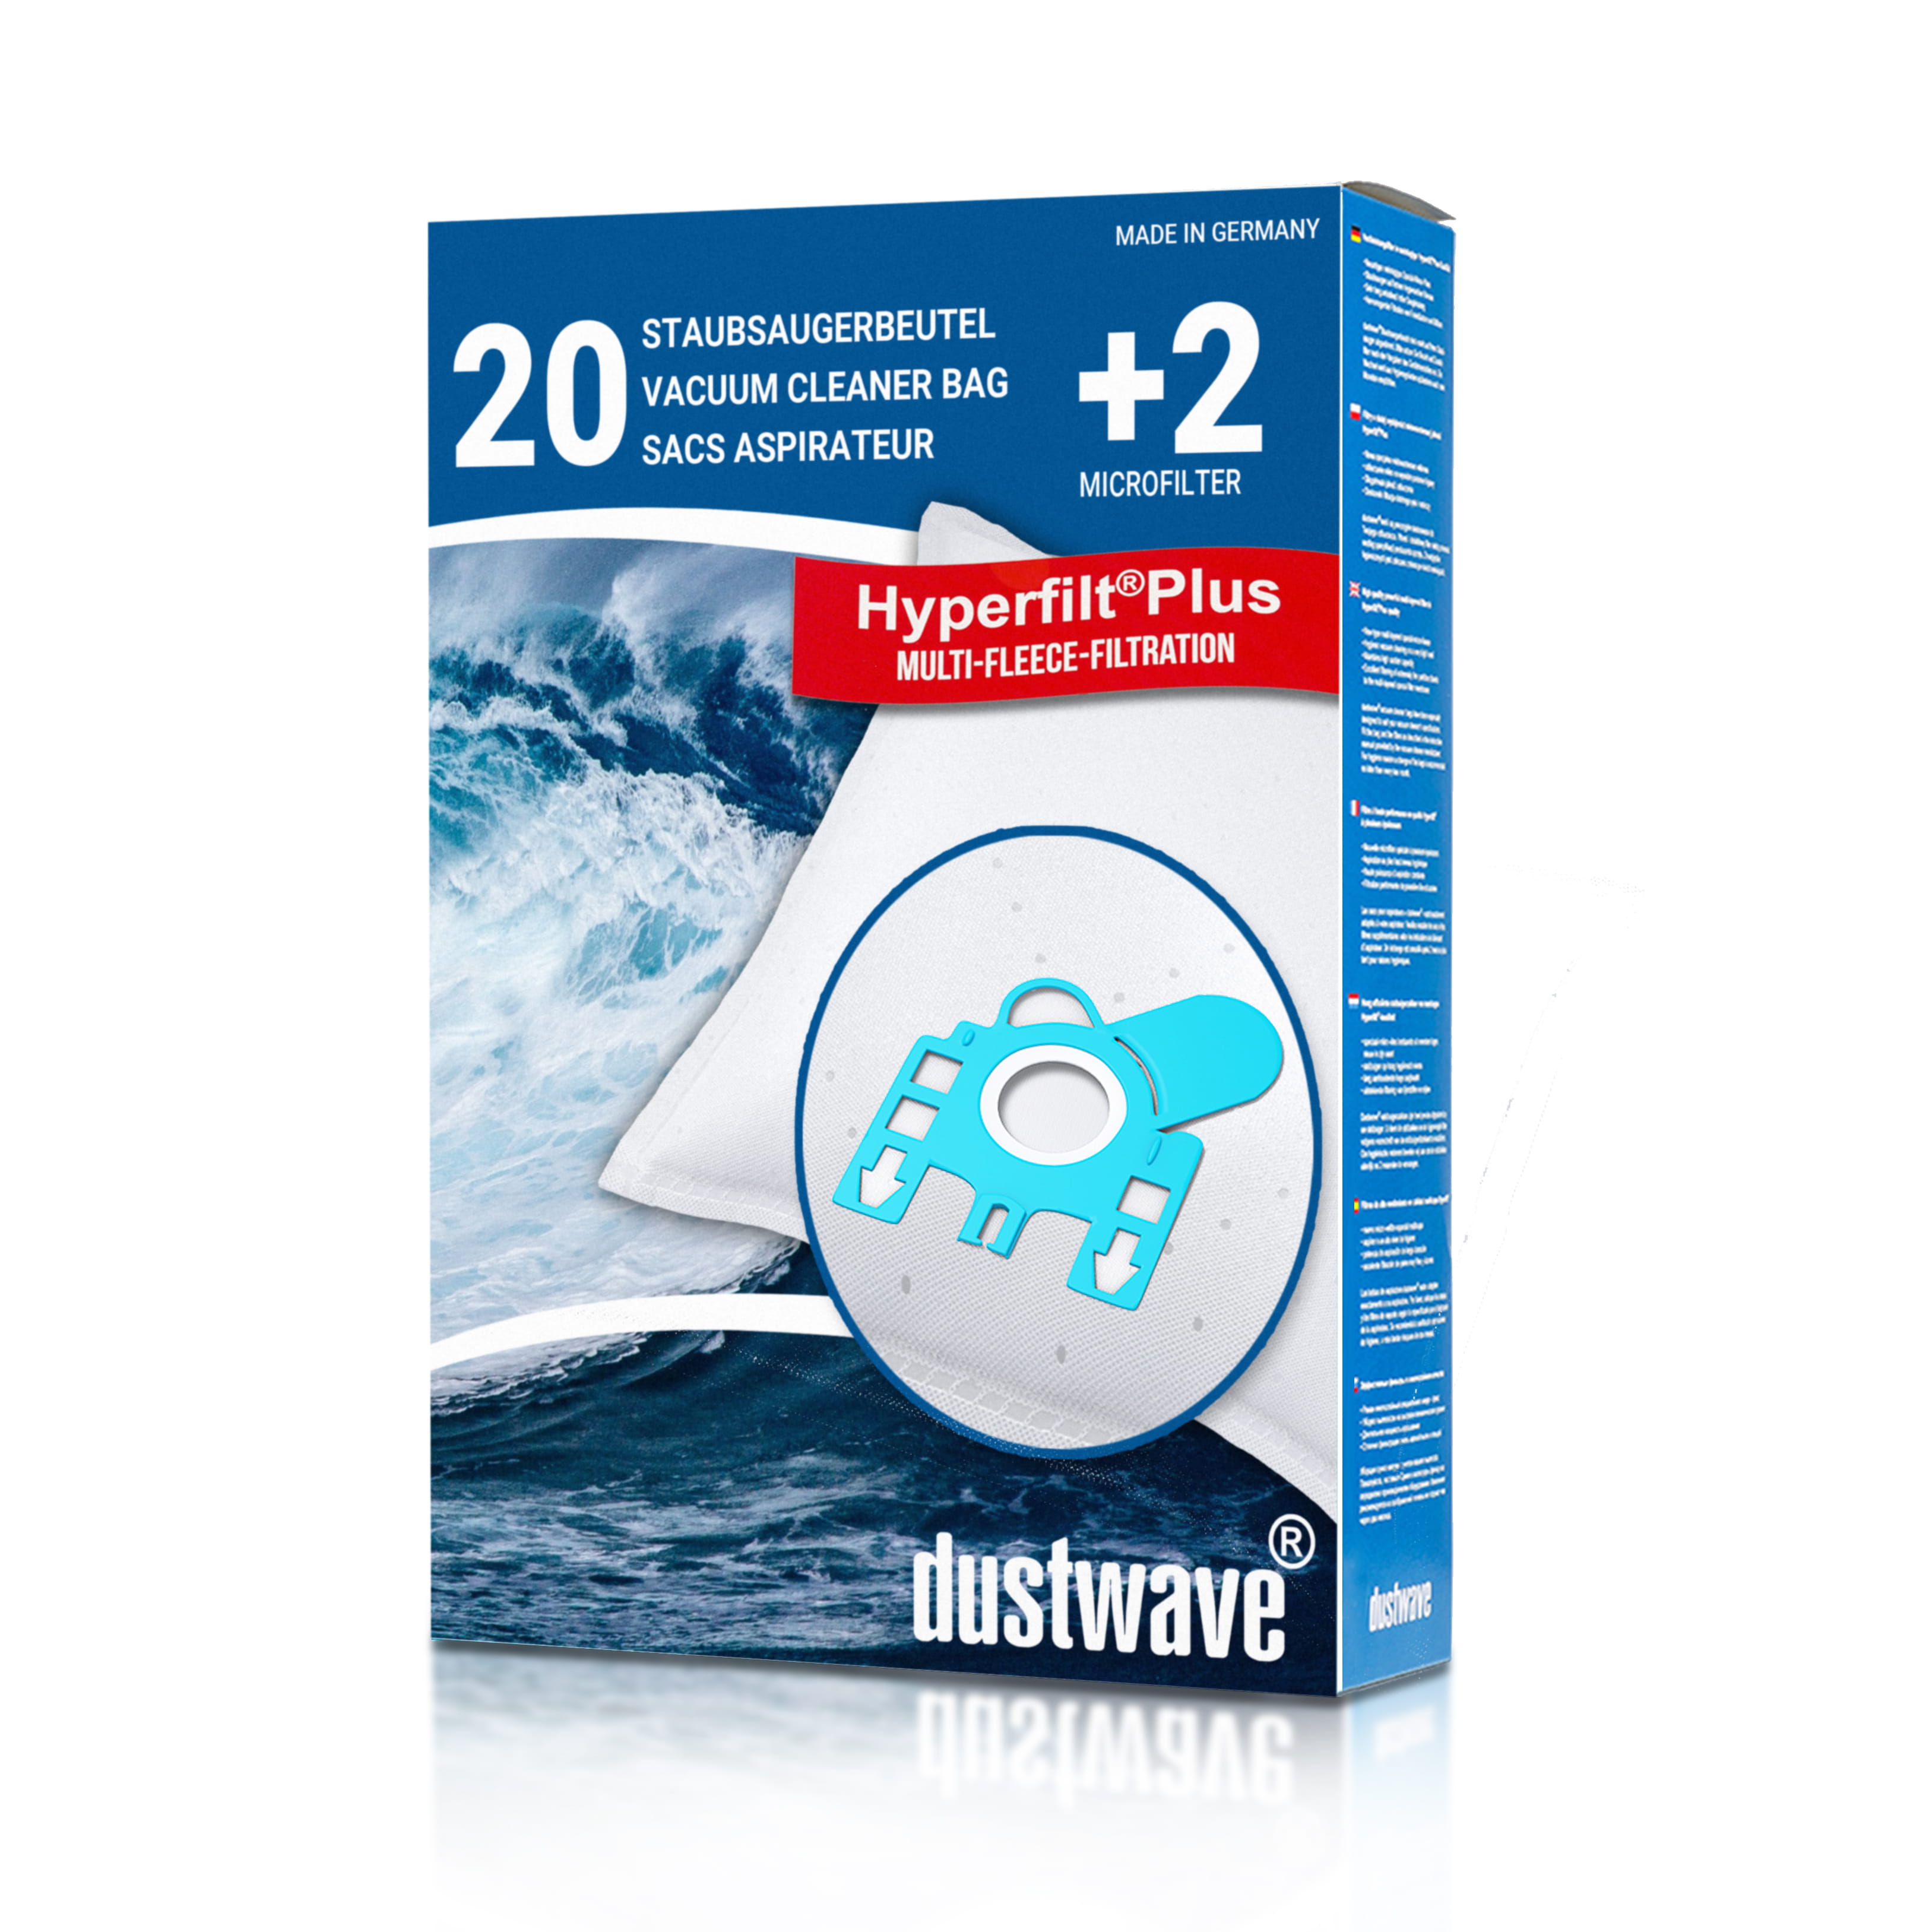 Dustwave® 20 Staubsaugerbeutel für Hoover T5778 / TRT5778 - hocheffizient, mehrlagiges Mikrovlies mit Hygieneverschluss - Made in Germany